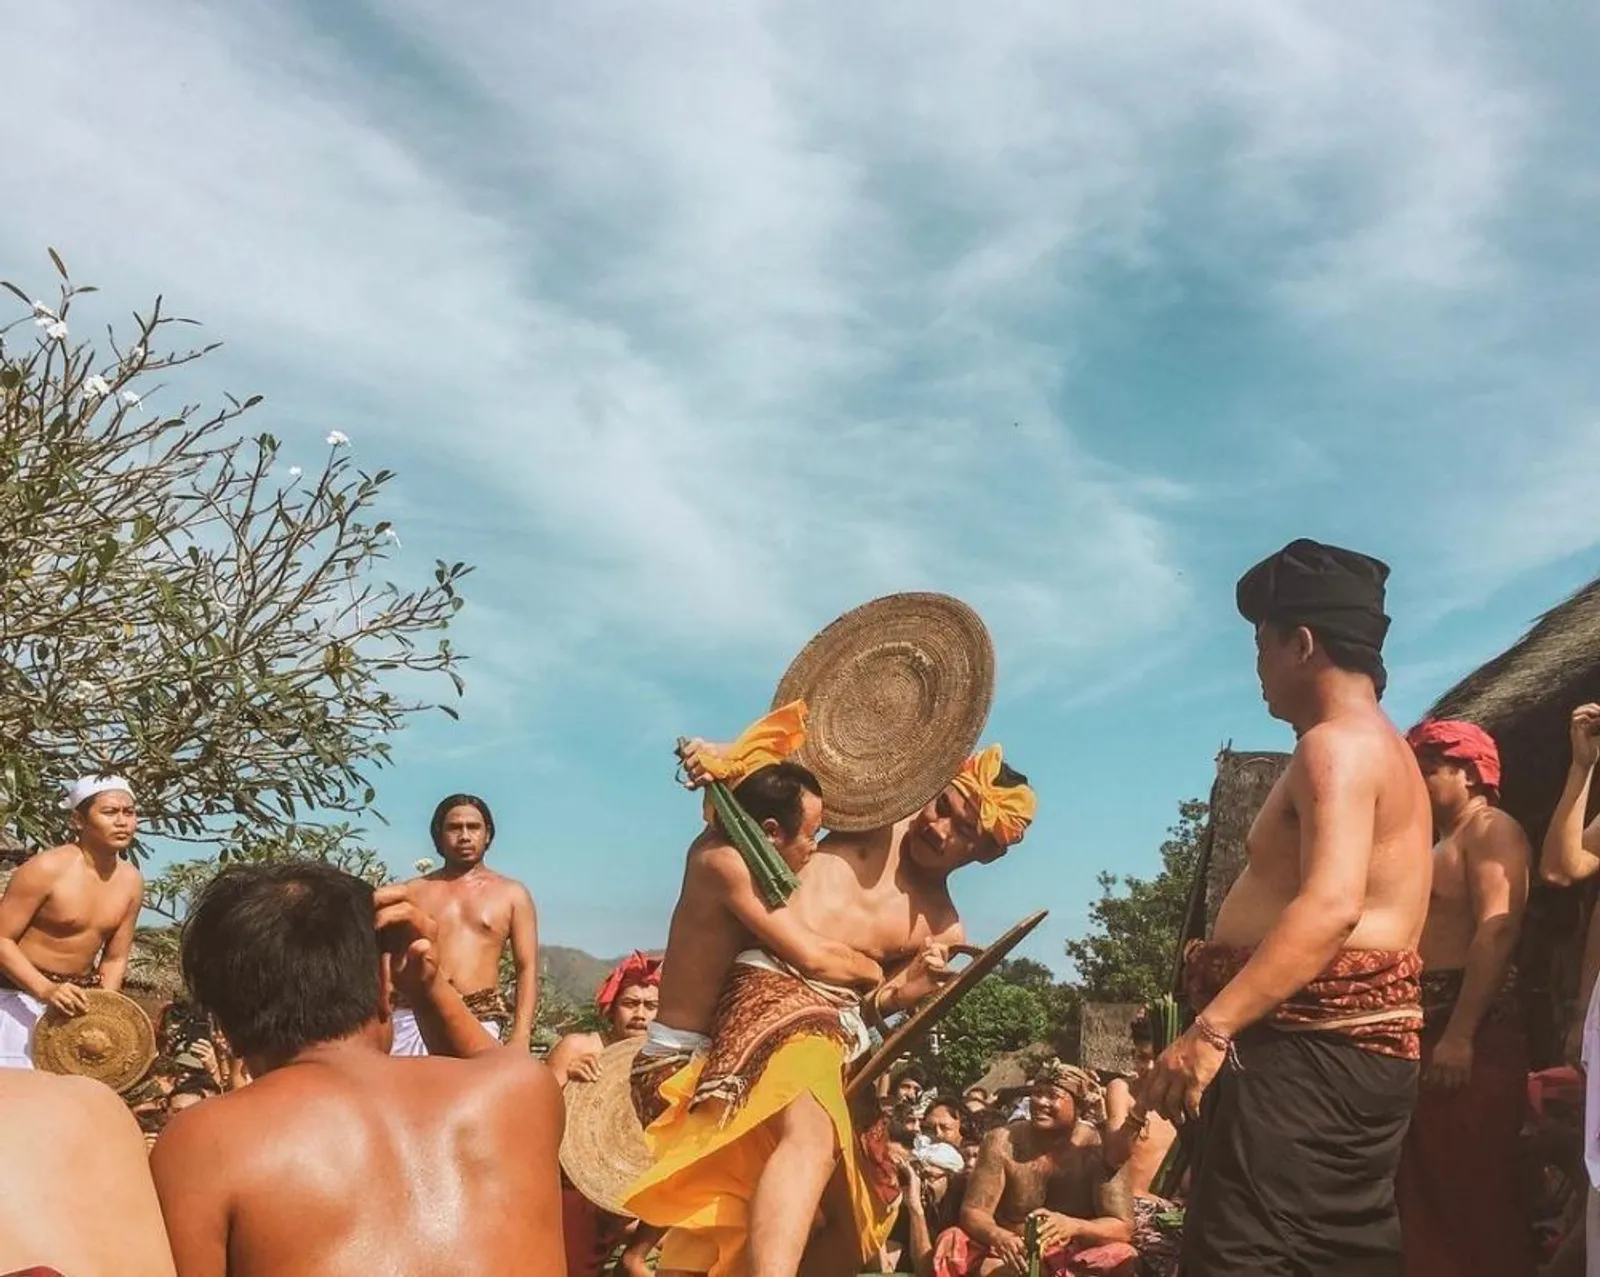 9 Desa Unik di Bali yang Bikin Dunia Terpukau, Keren Abis!